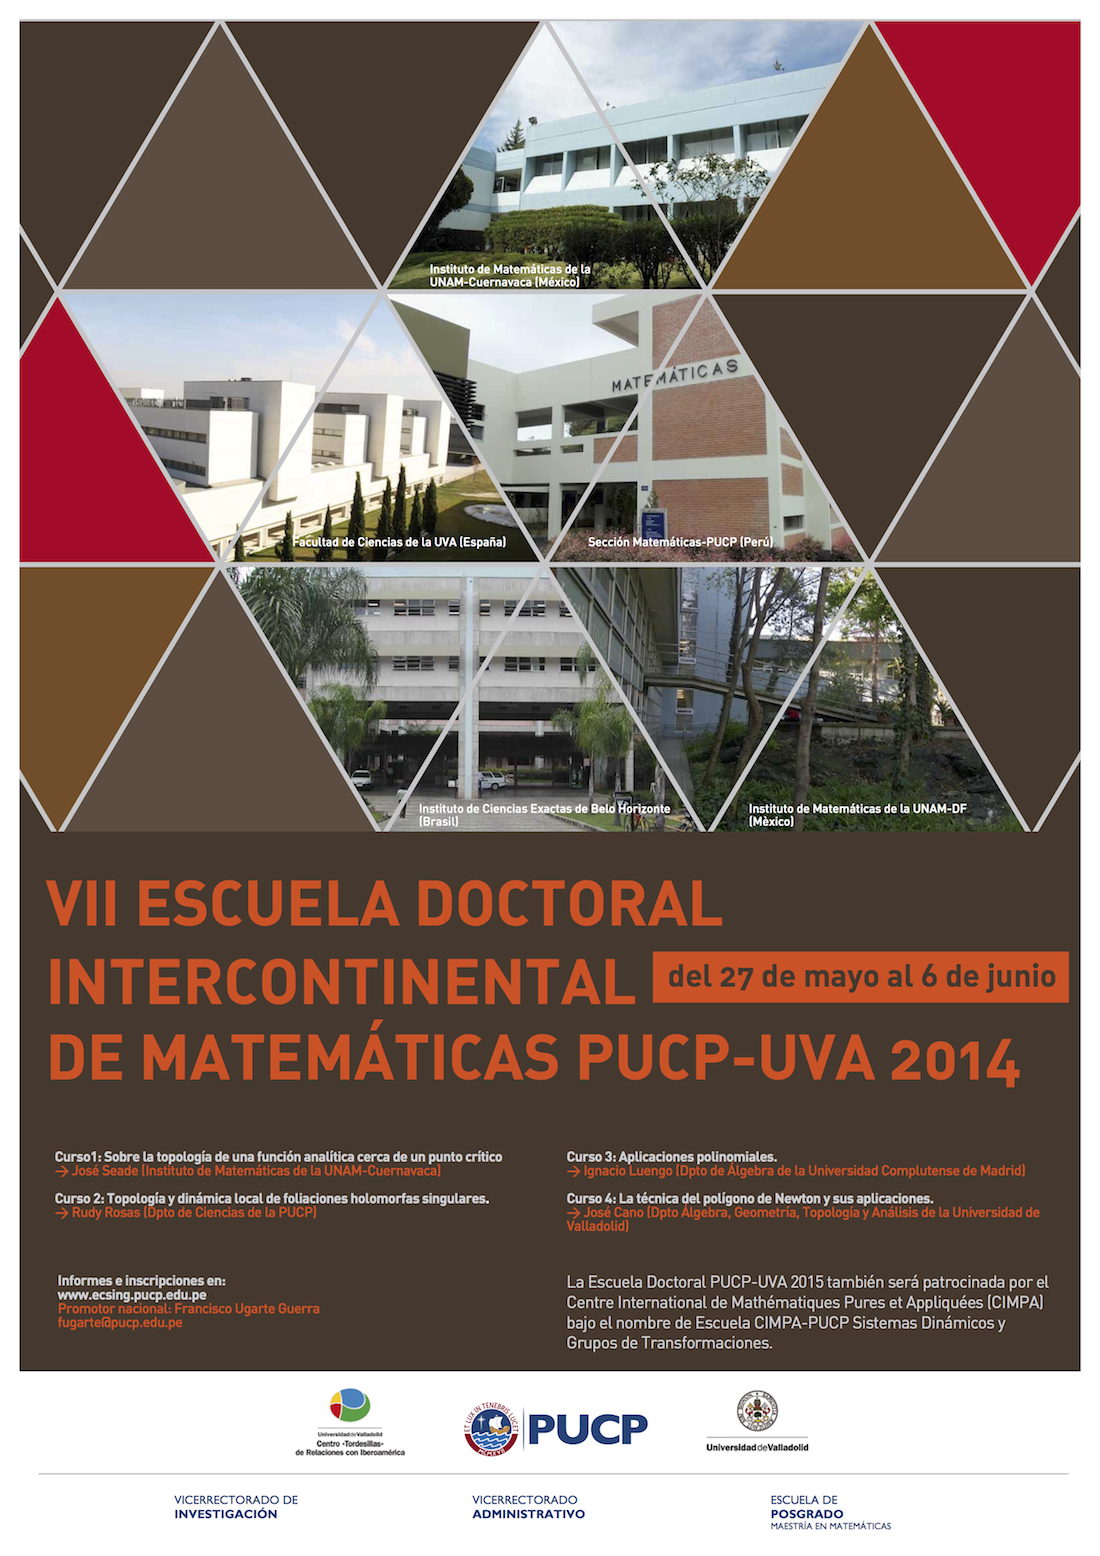 VII Escuela Doctoral Intercontinental de Matemáticas PUCP-UVA 2014